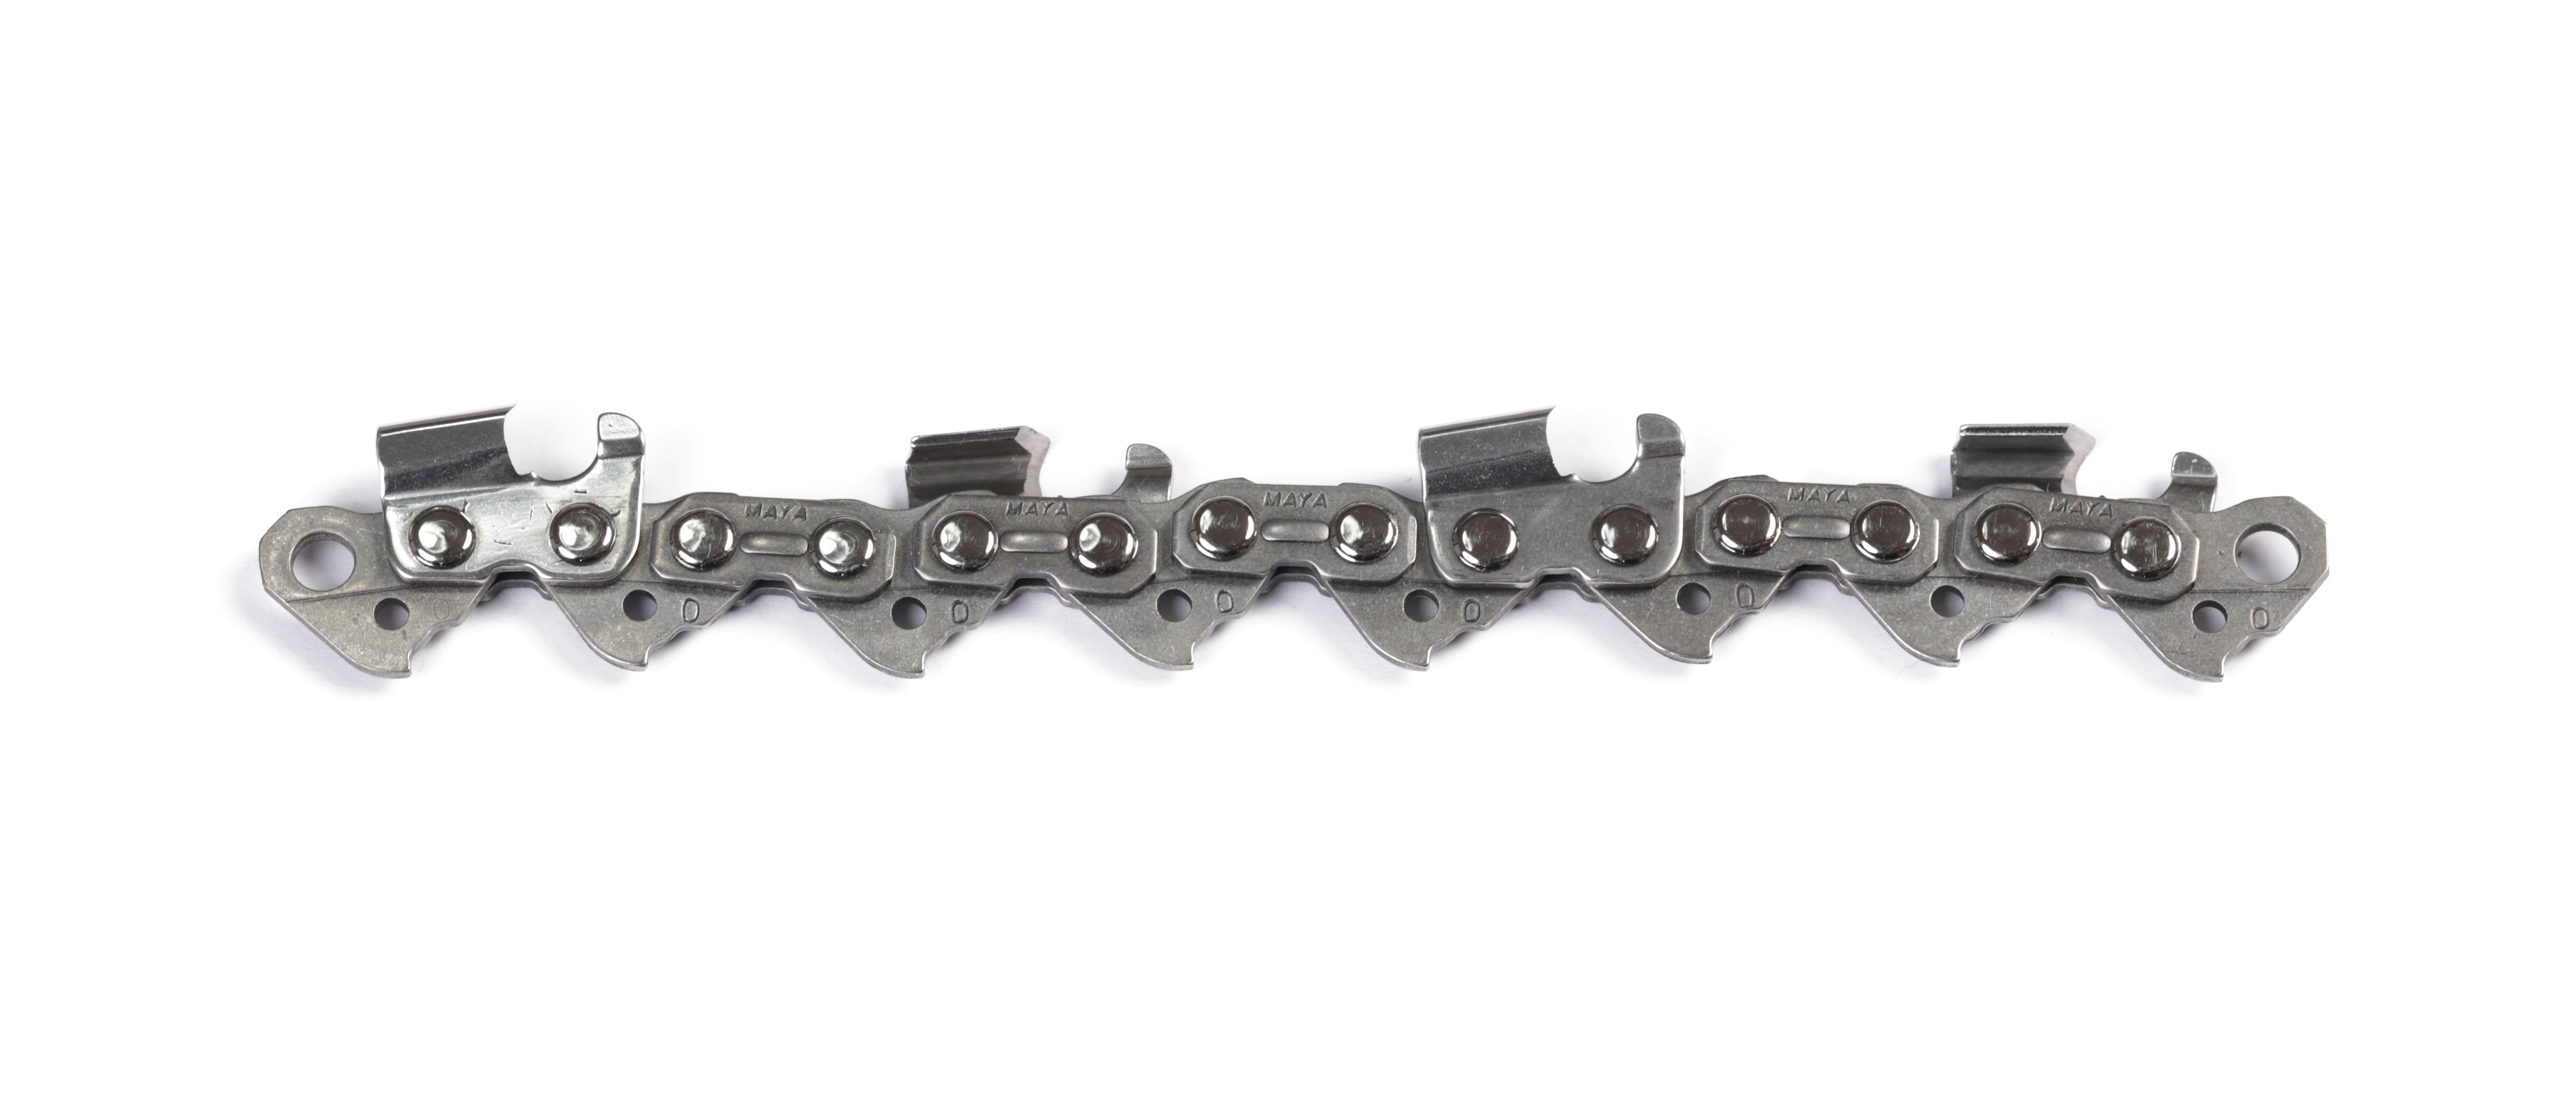 chainsaw carbide chains,chainsaw carbide chains Supplier